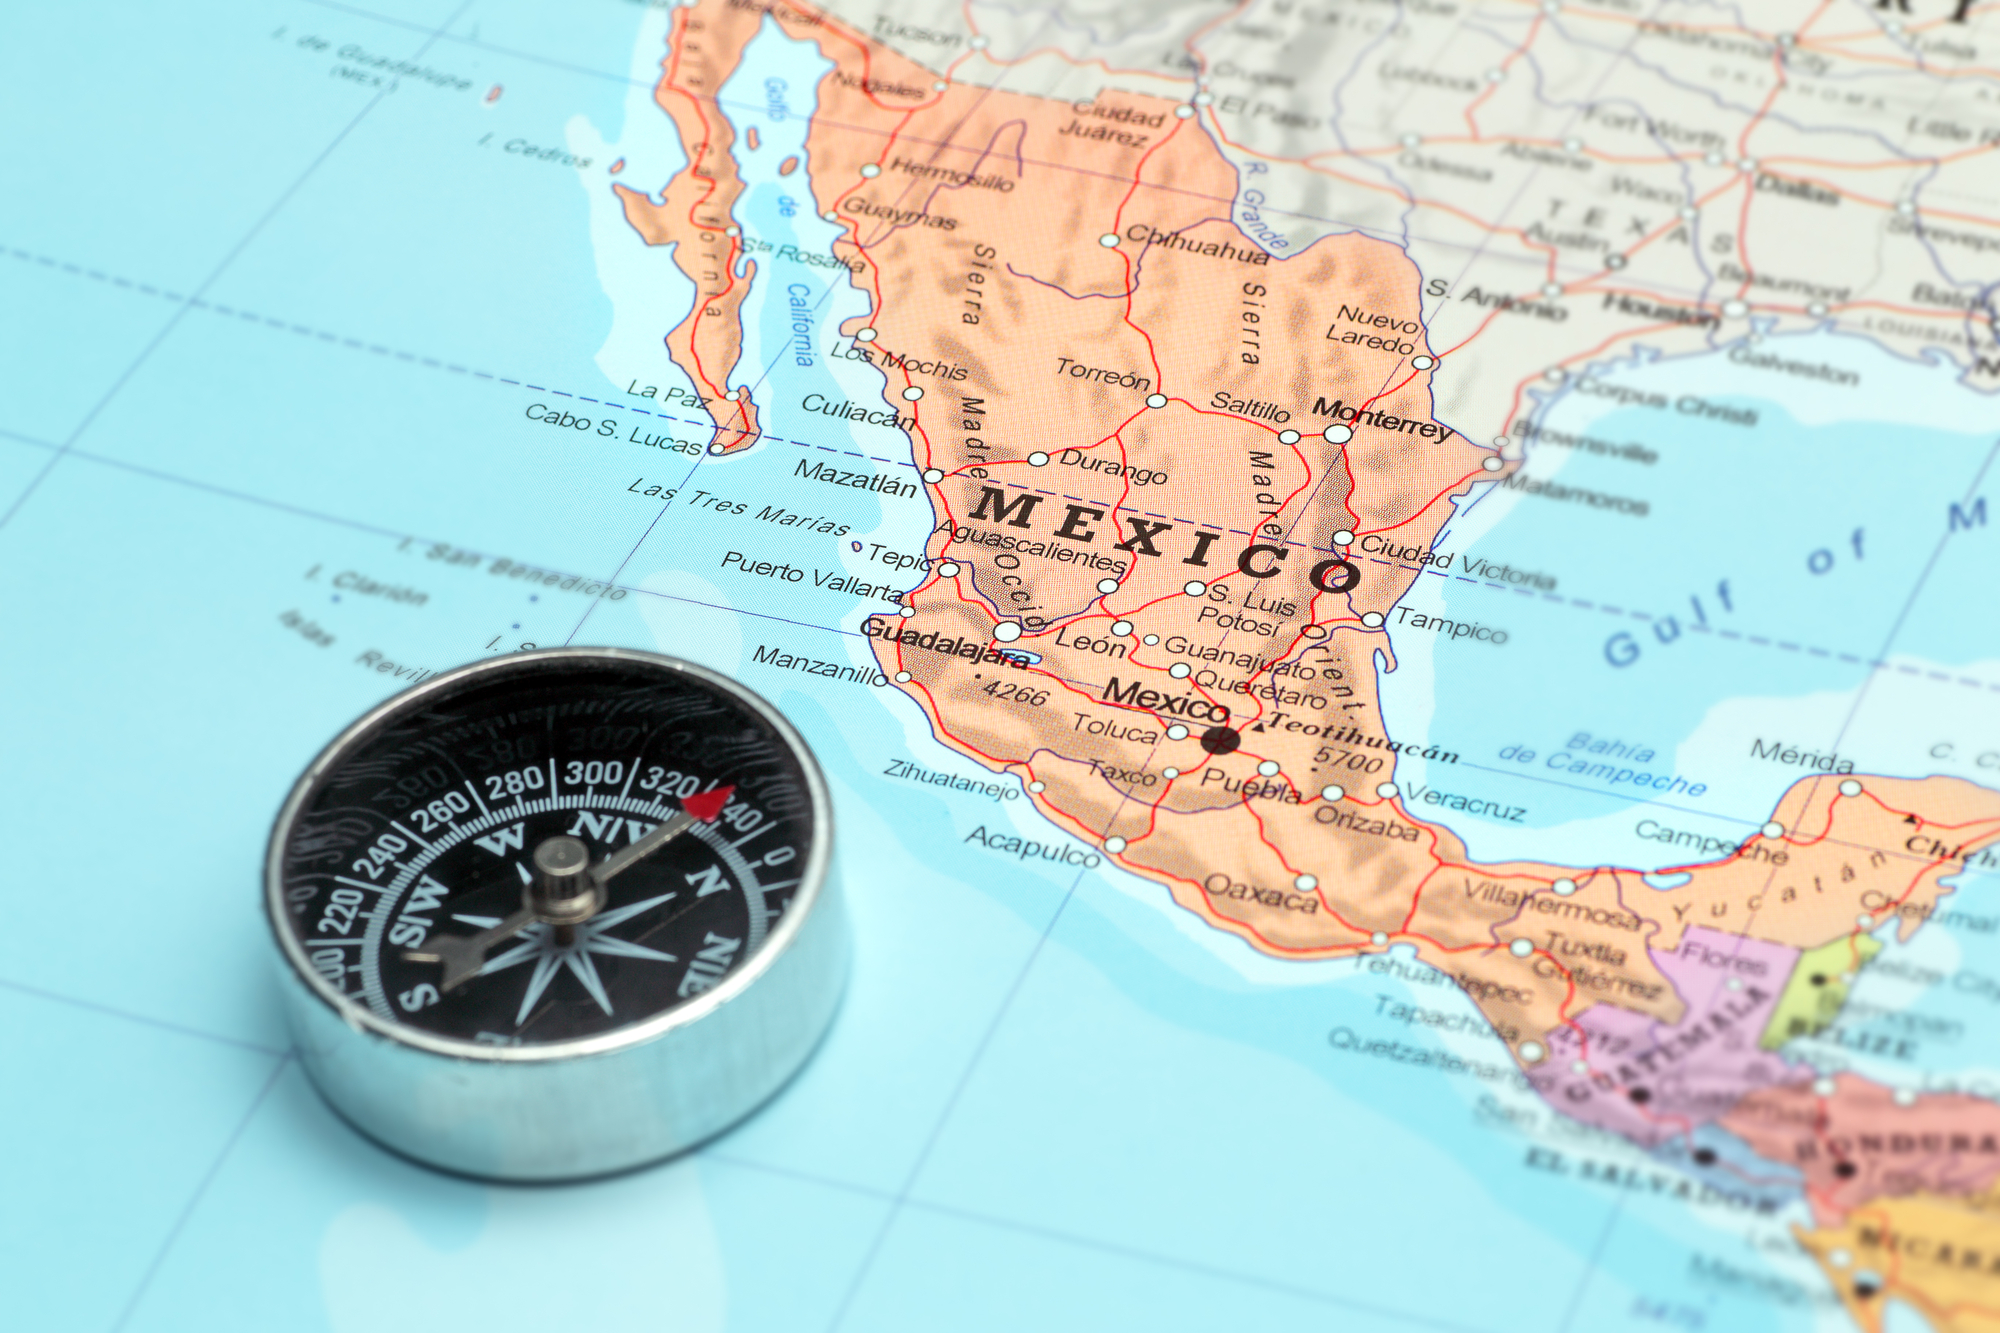 Mientras que otros mercados tropiezan, México está subiendo con sus startups.